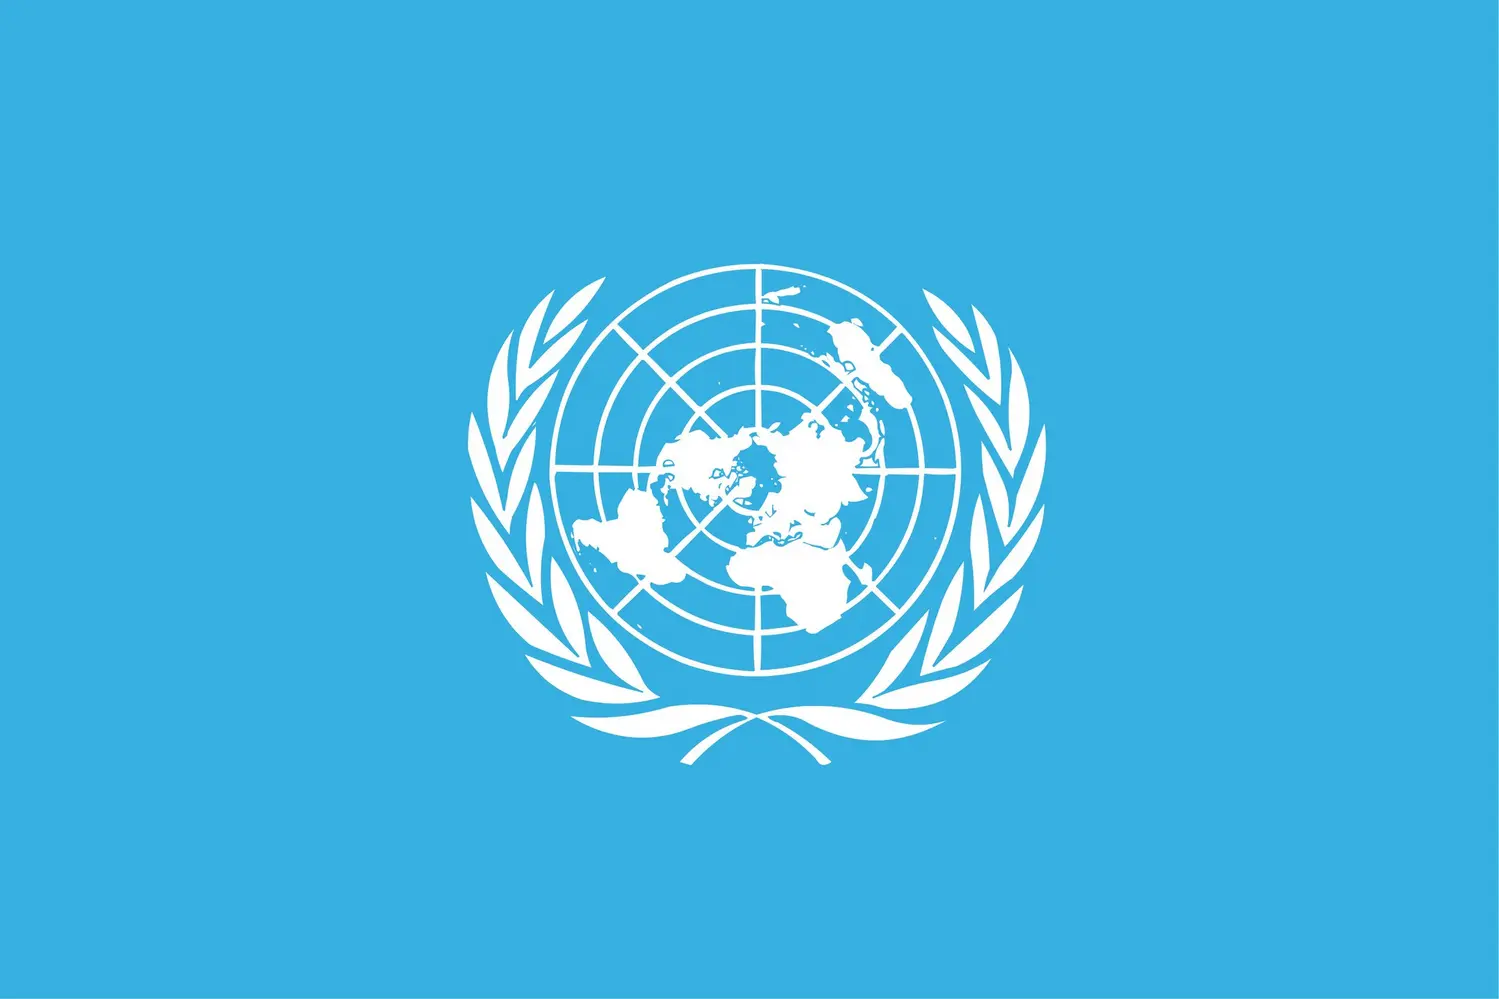 Organisation des Nations unies : drapeau